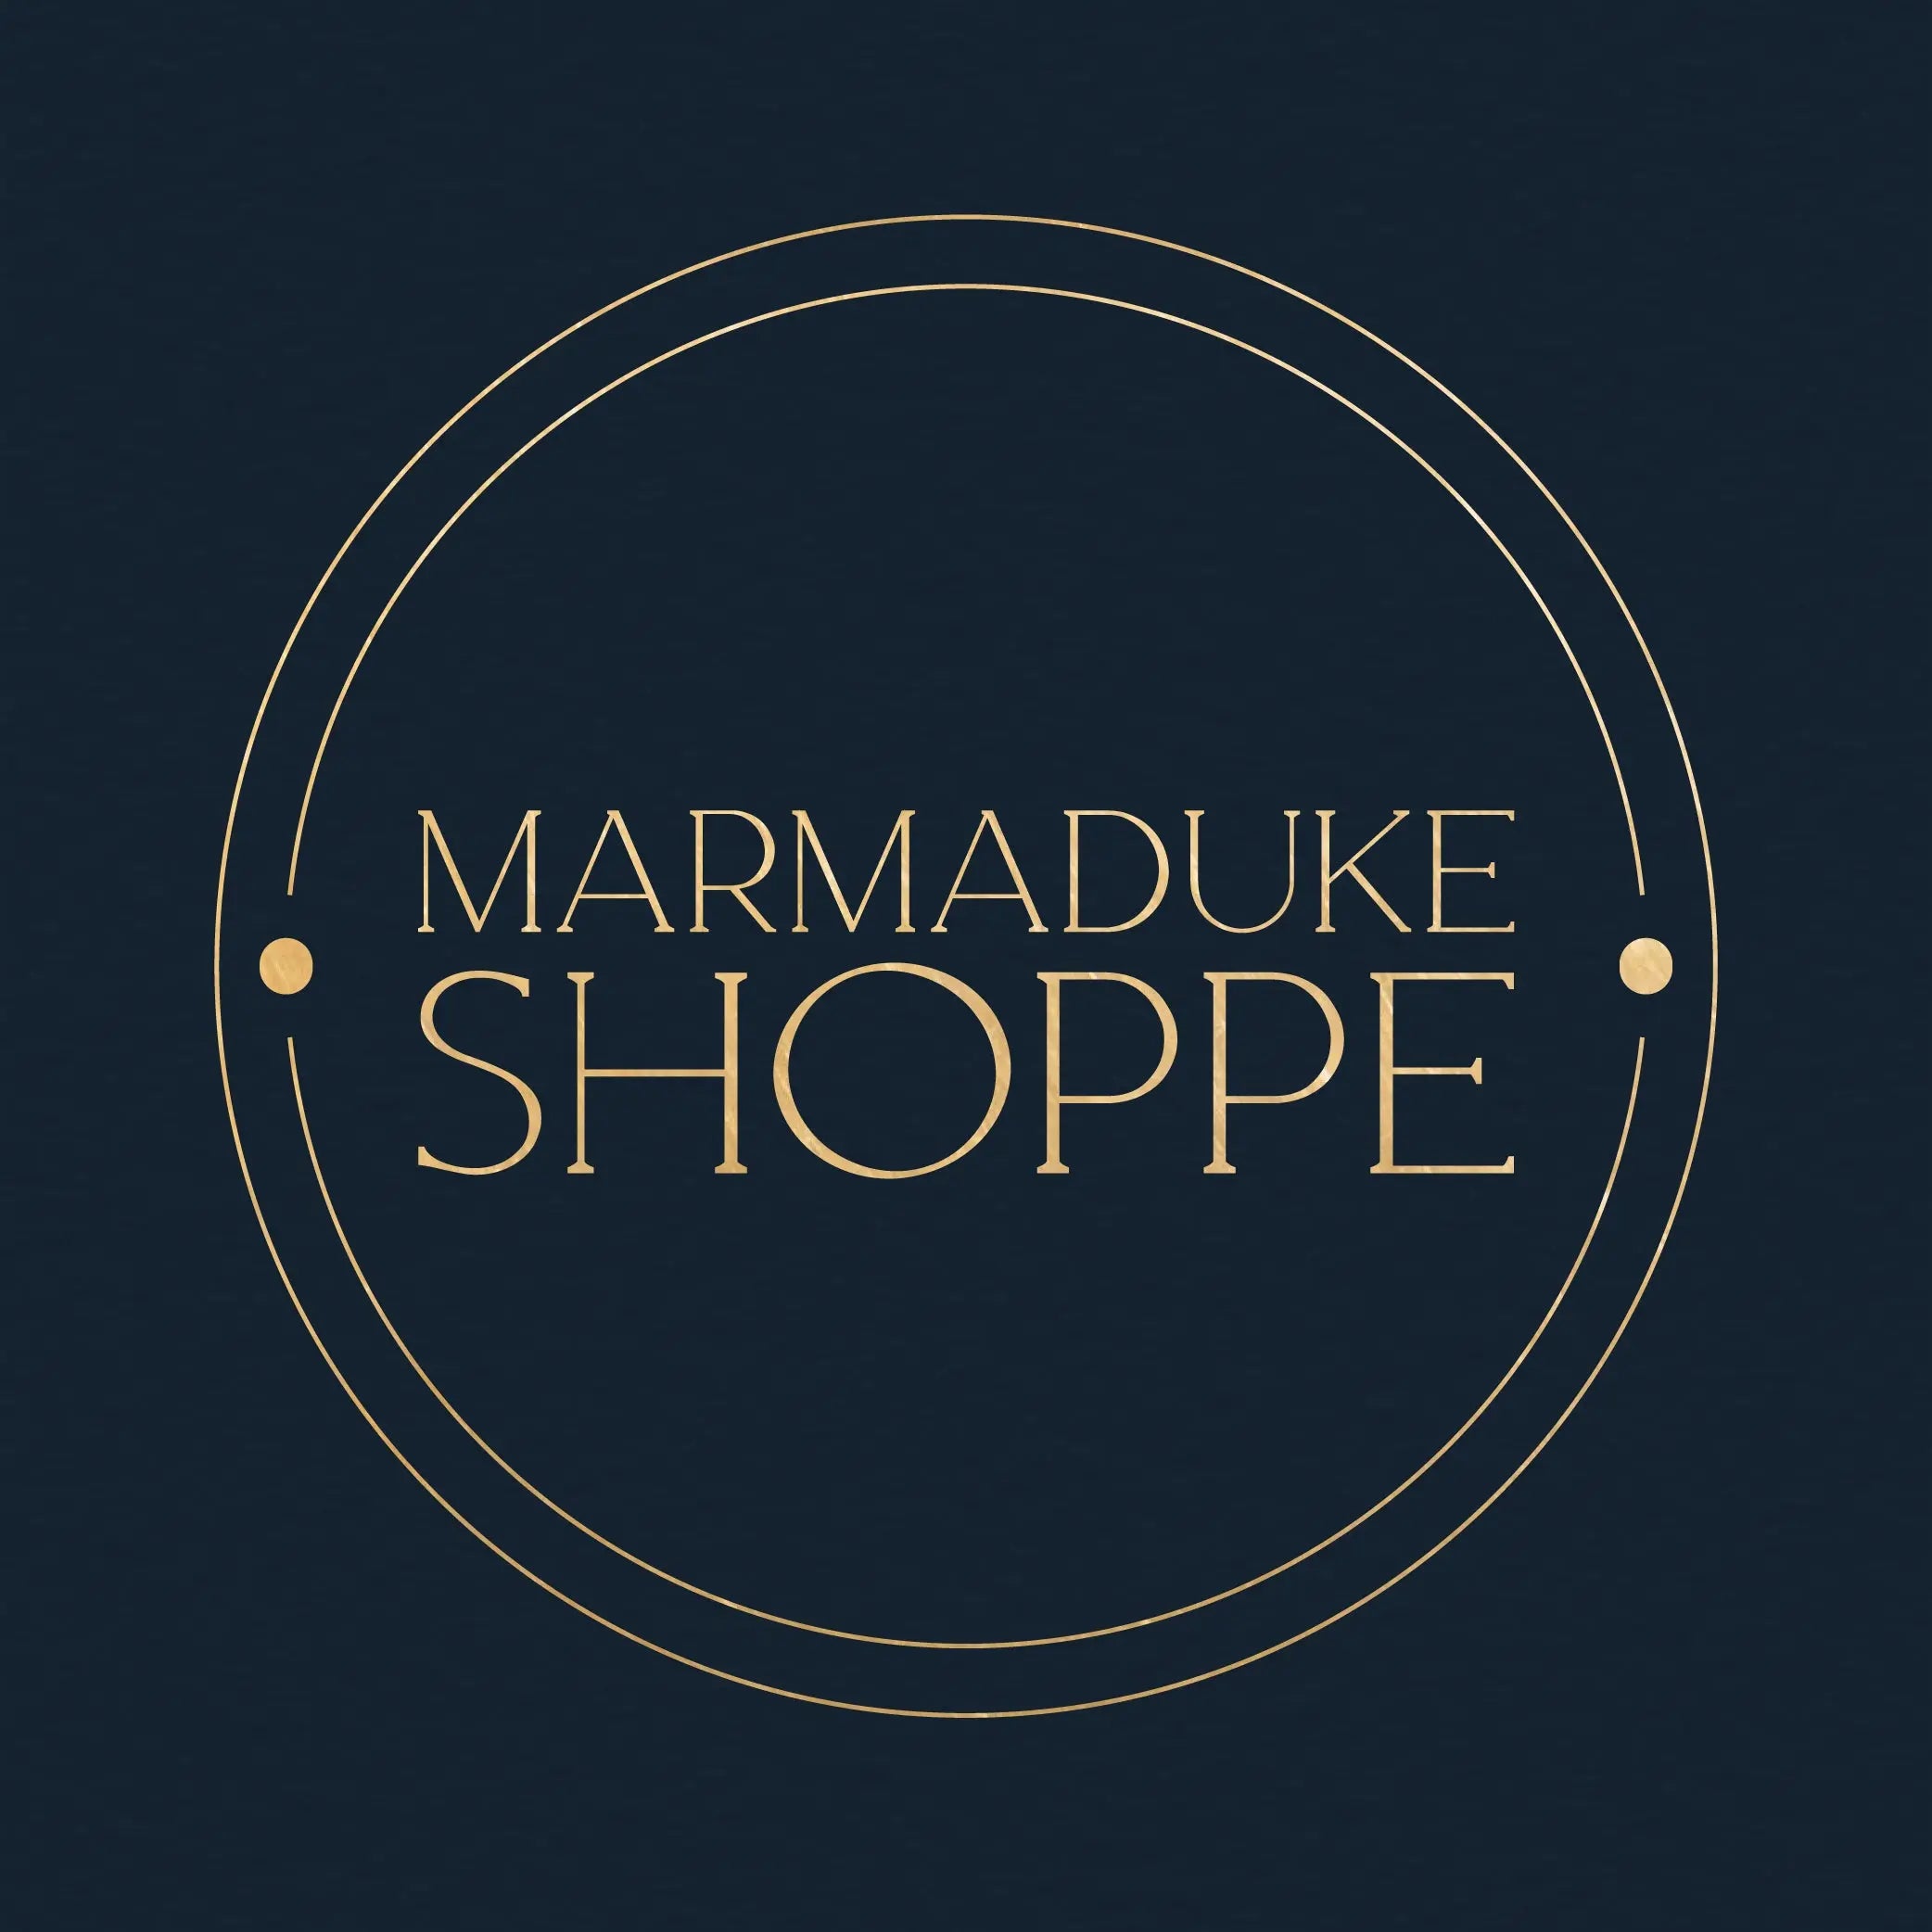 Shipping Marmaduke Shoppe